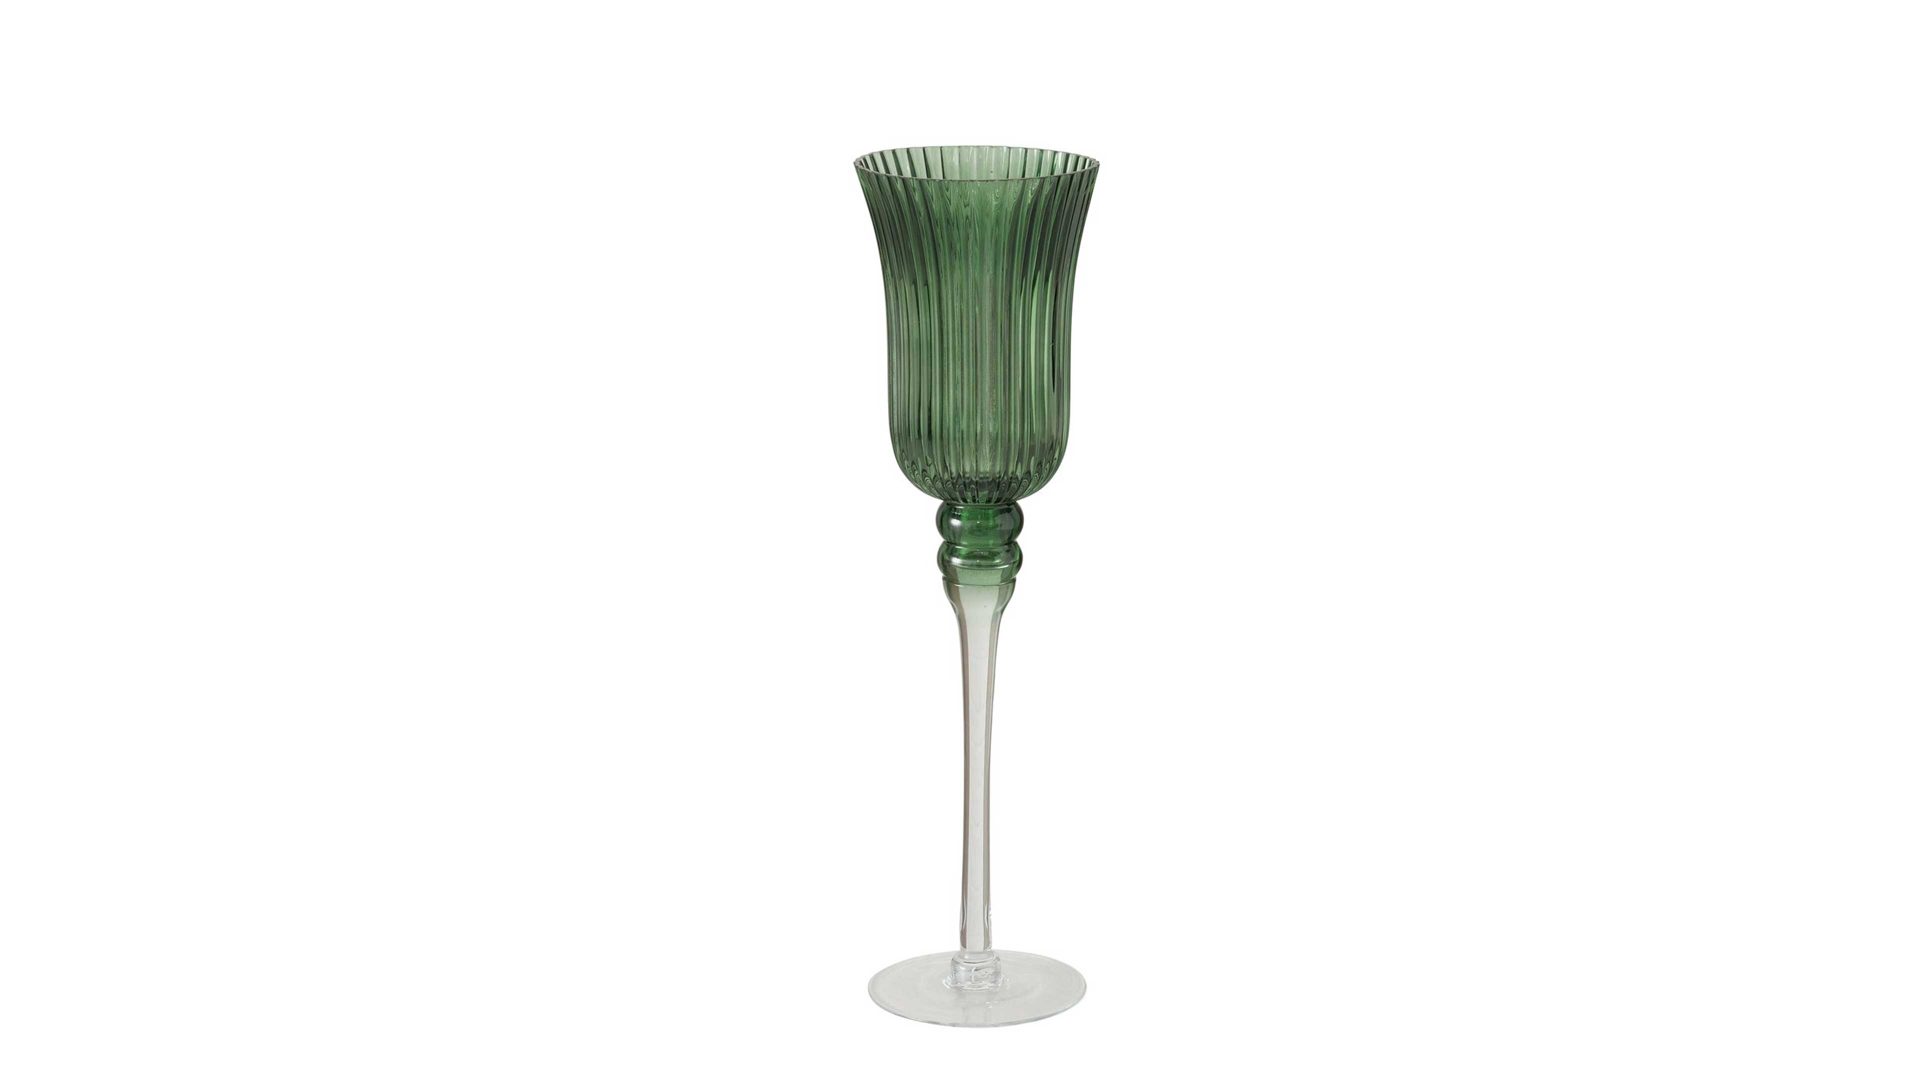 Windlicht Boltze aus Glas in Grün Teelichtglas Manou grünes Glas - Höhe ca. 30 cm